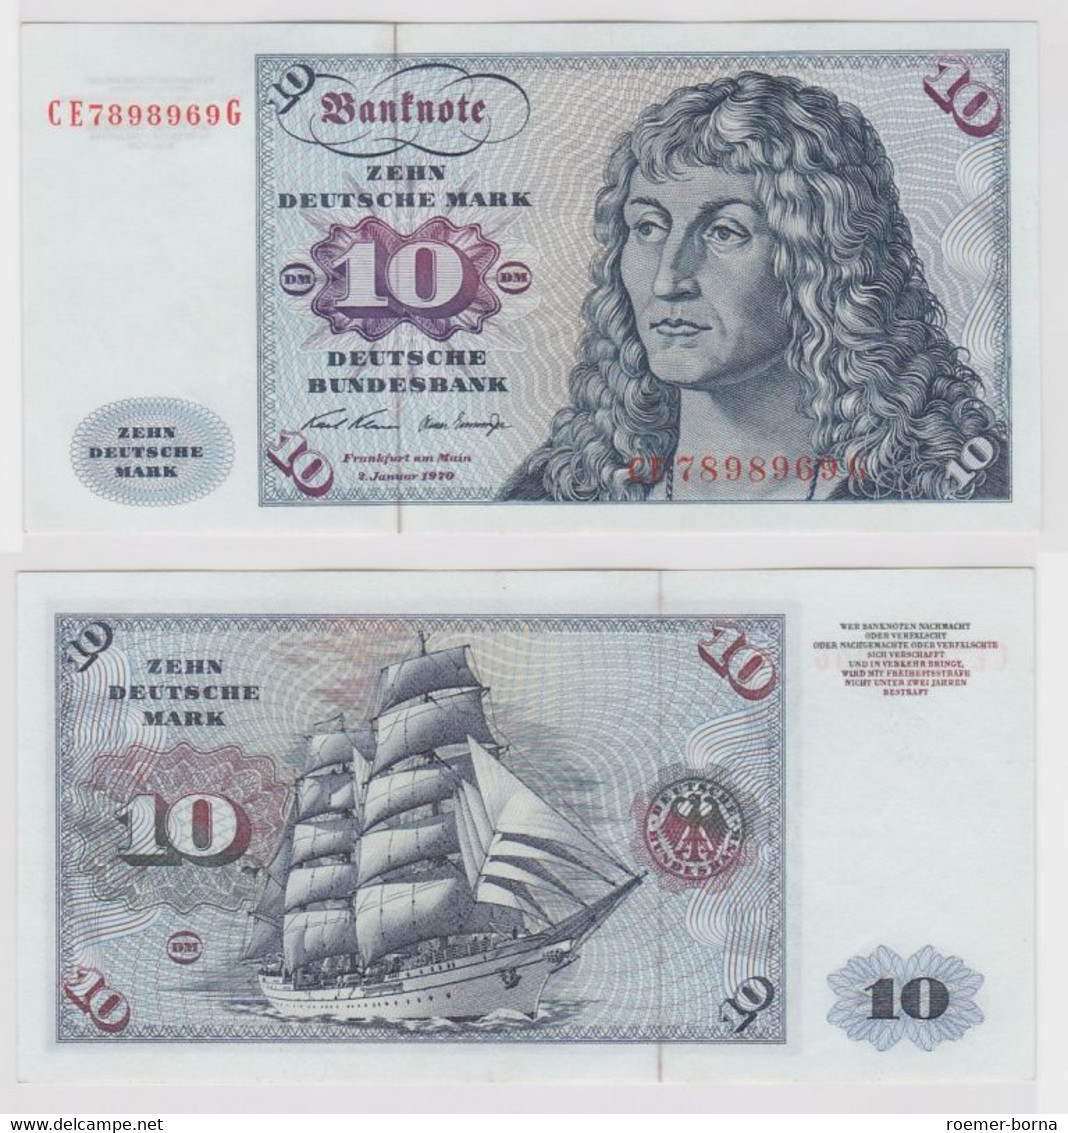 T147591 Banknote 10 DM Deutsche Mark Ro. 270b Schein 2.Jan. 1970 KN CE 7898969 G - 10 Deutsche Mark